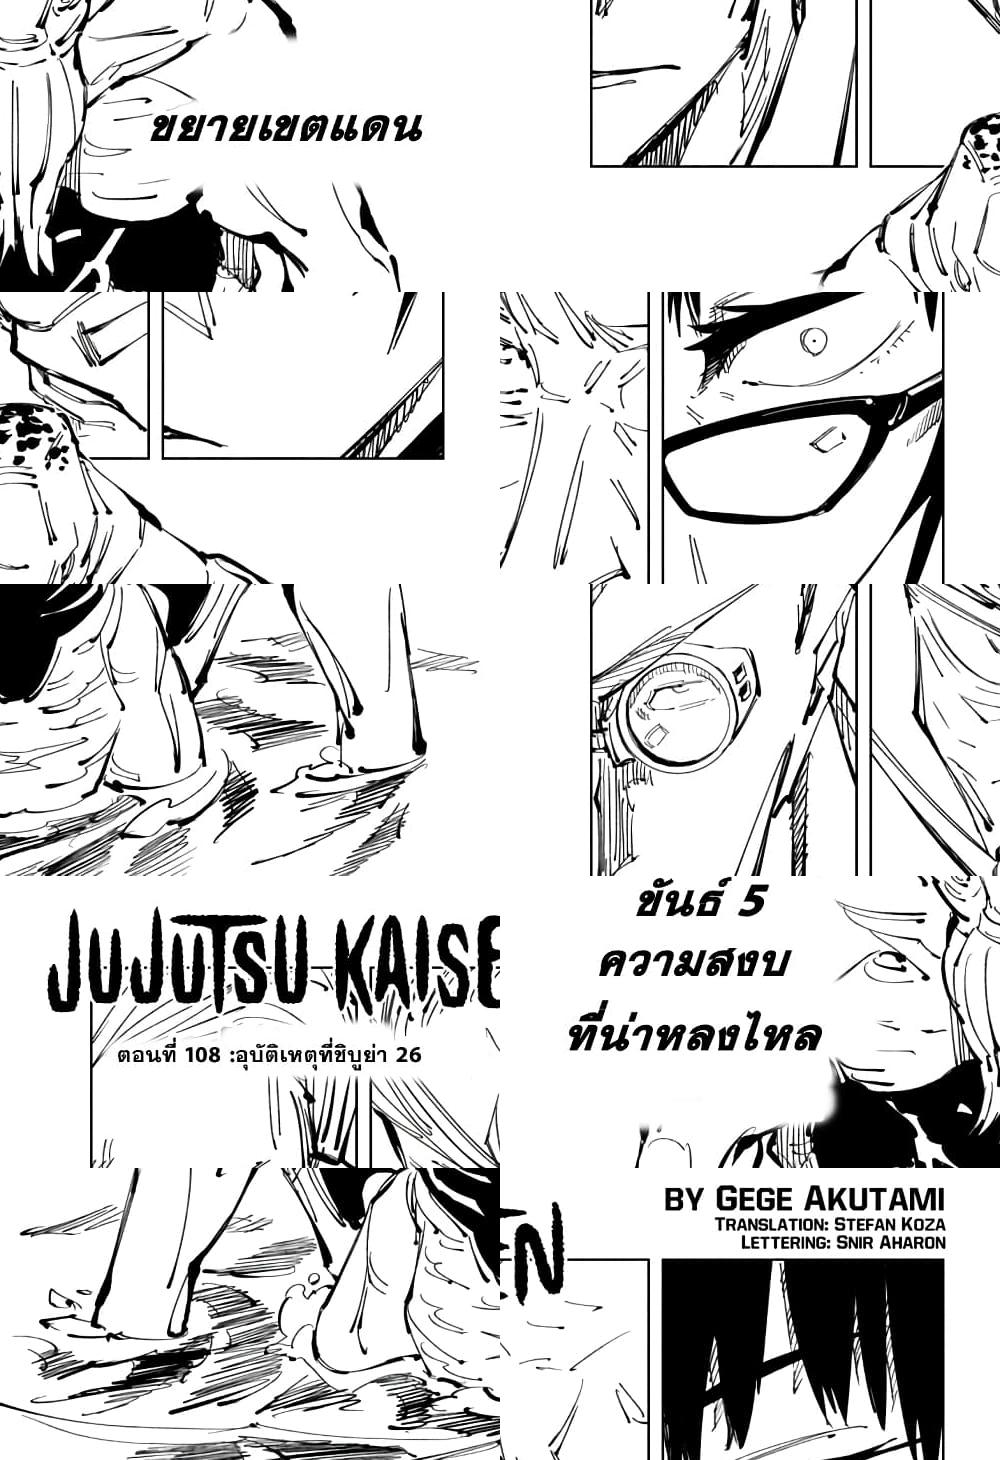 Jujutsu Kaisen มหาเวทย์ผนึกมาร - อุบัติการณ์ชิบุย่า 26 - 2